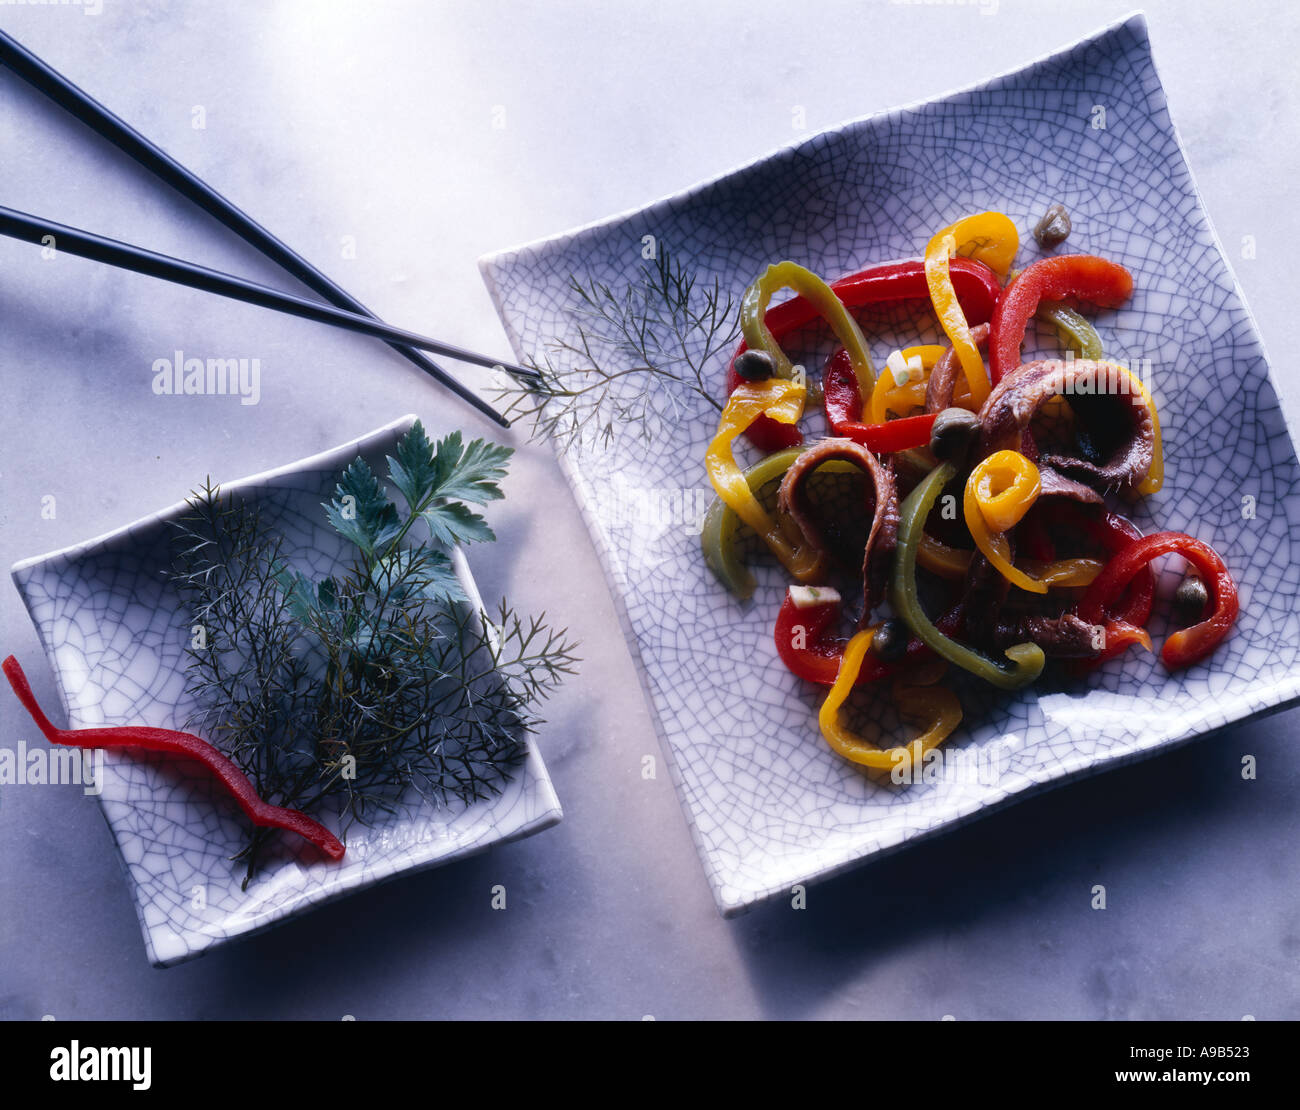 Le Japon l'anchois et poivrons sur les plaques de cuisson Raku Banque D'Images